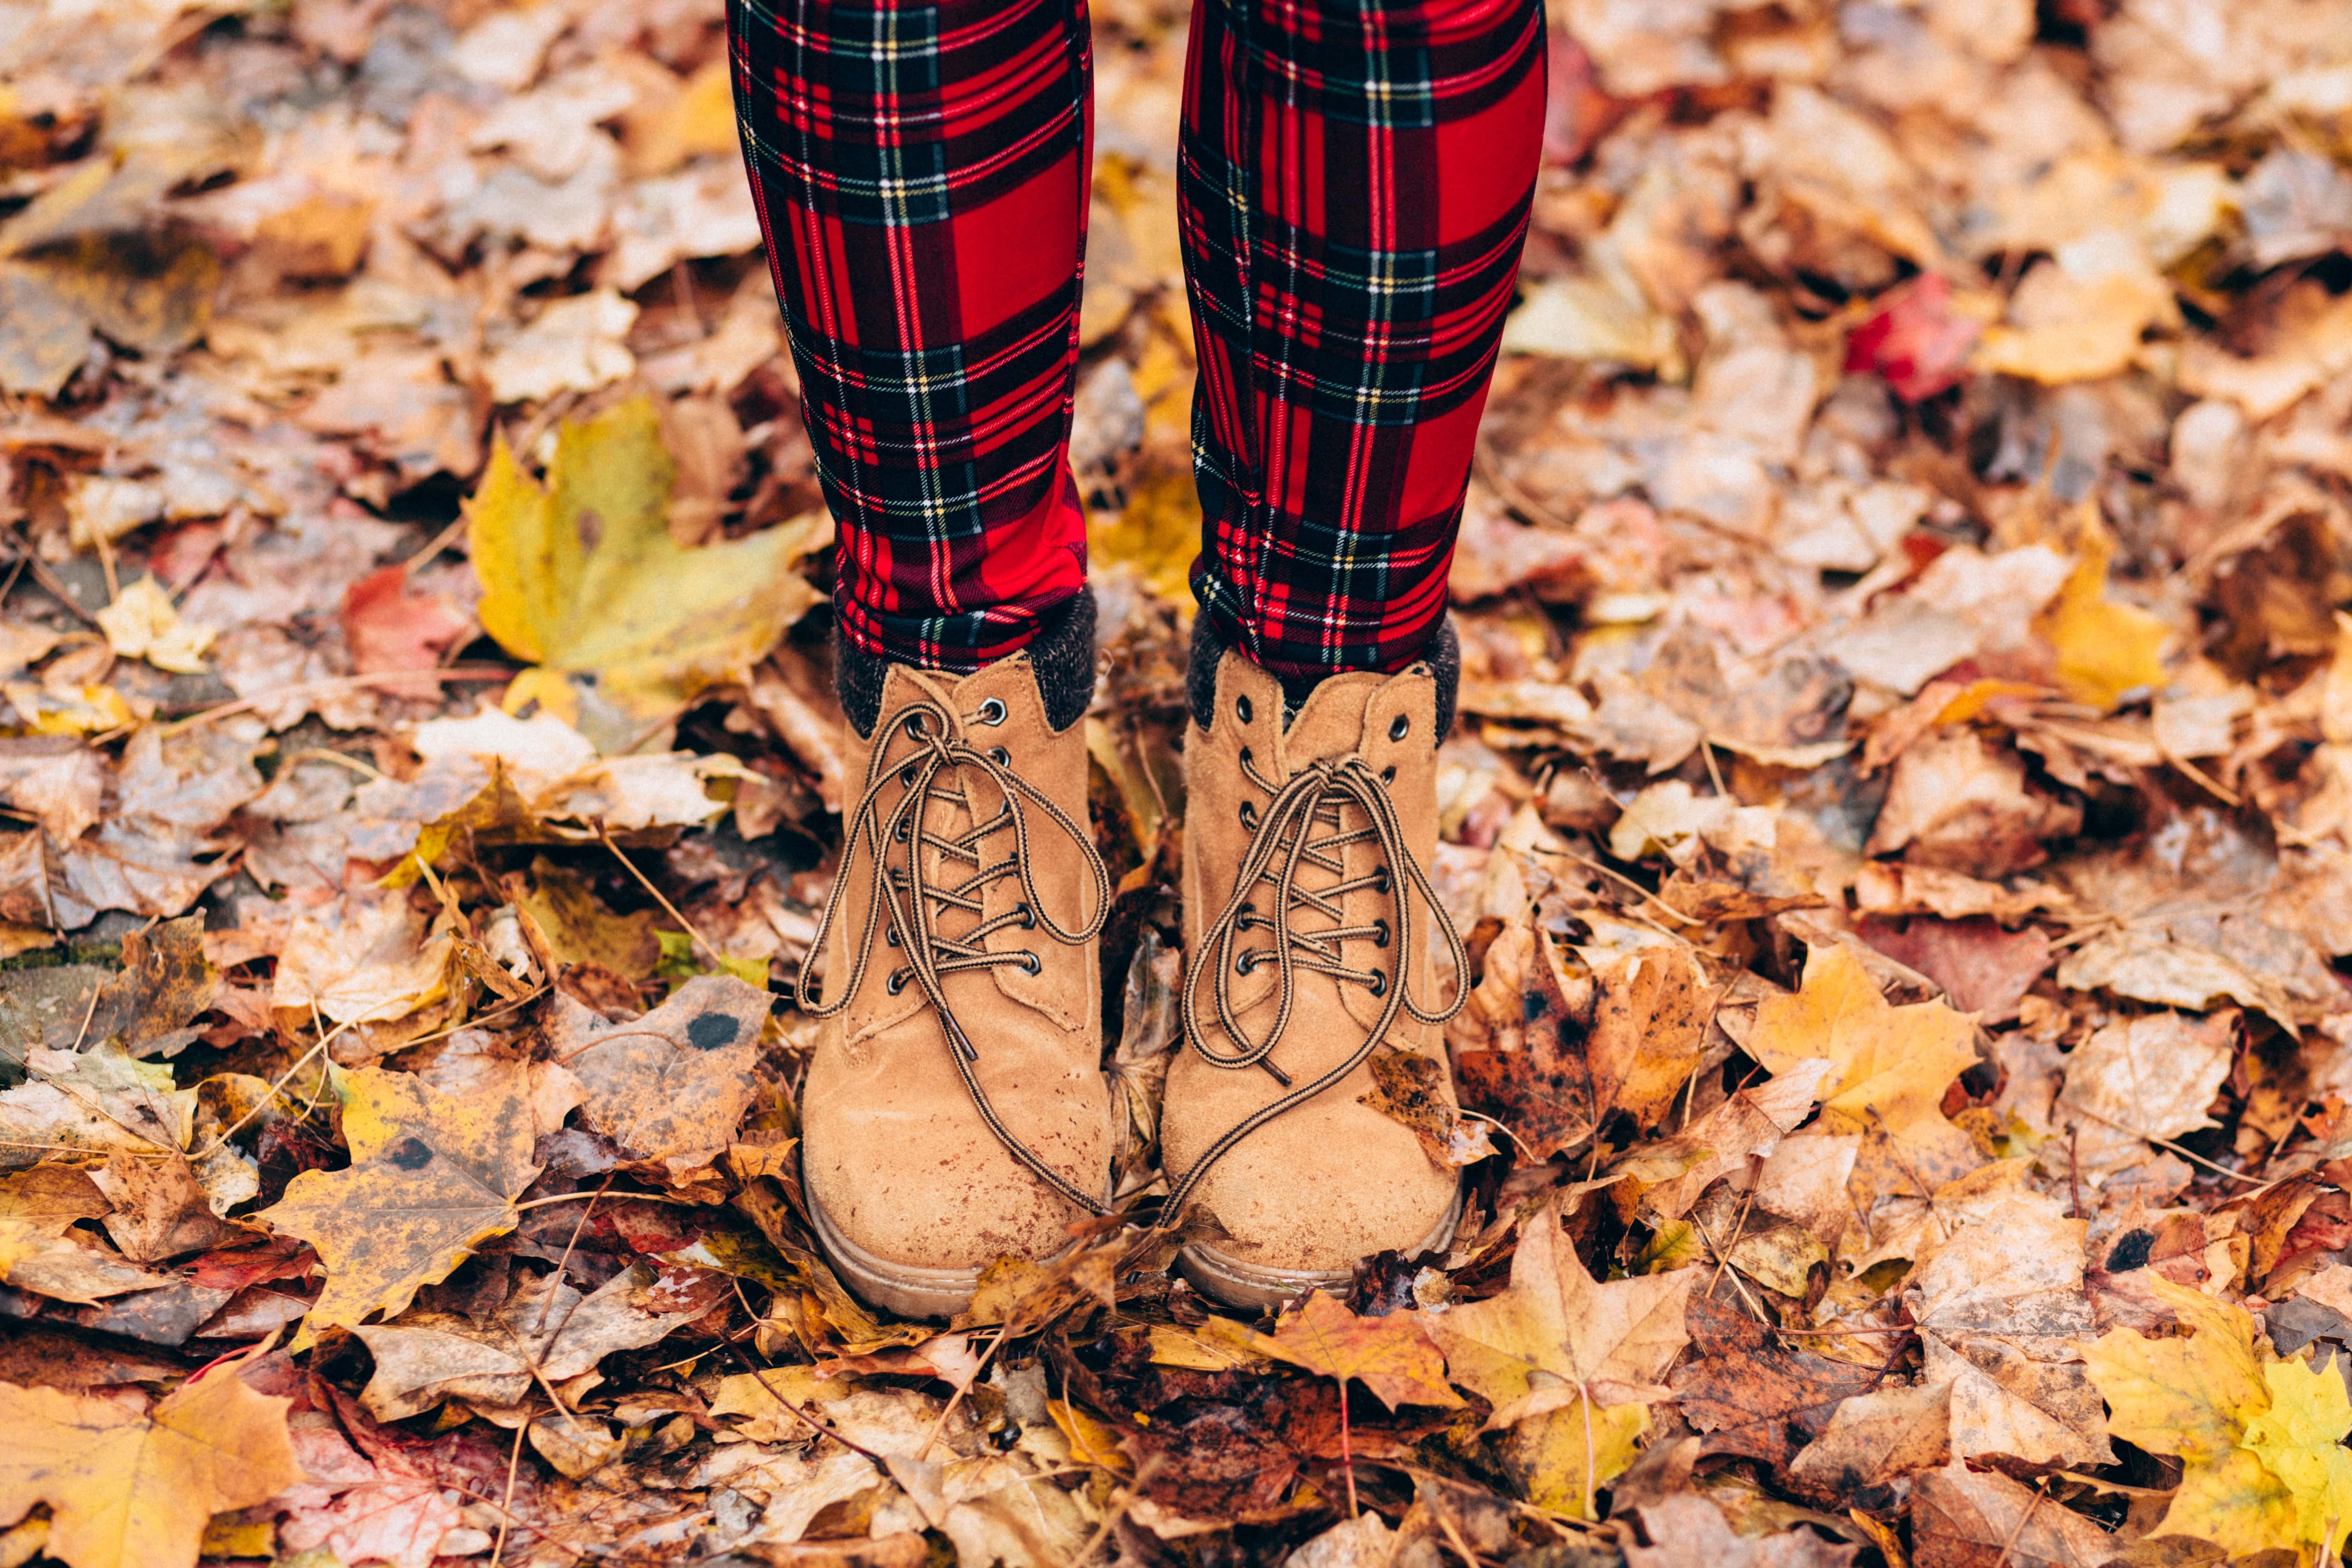 Autumn Boots